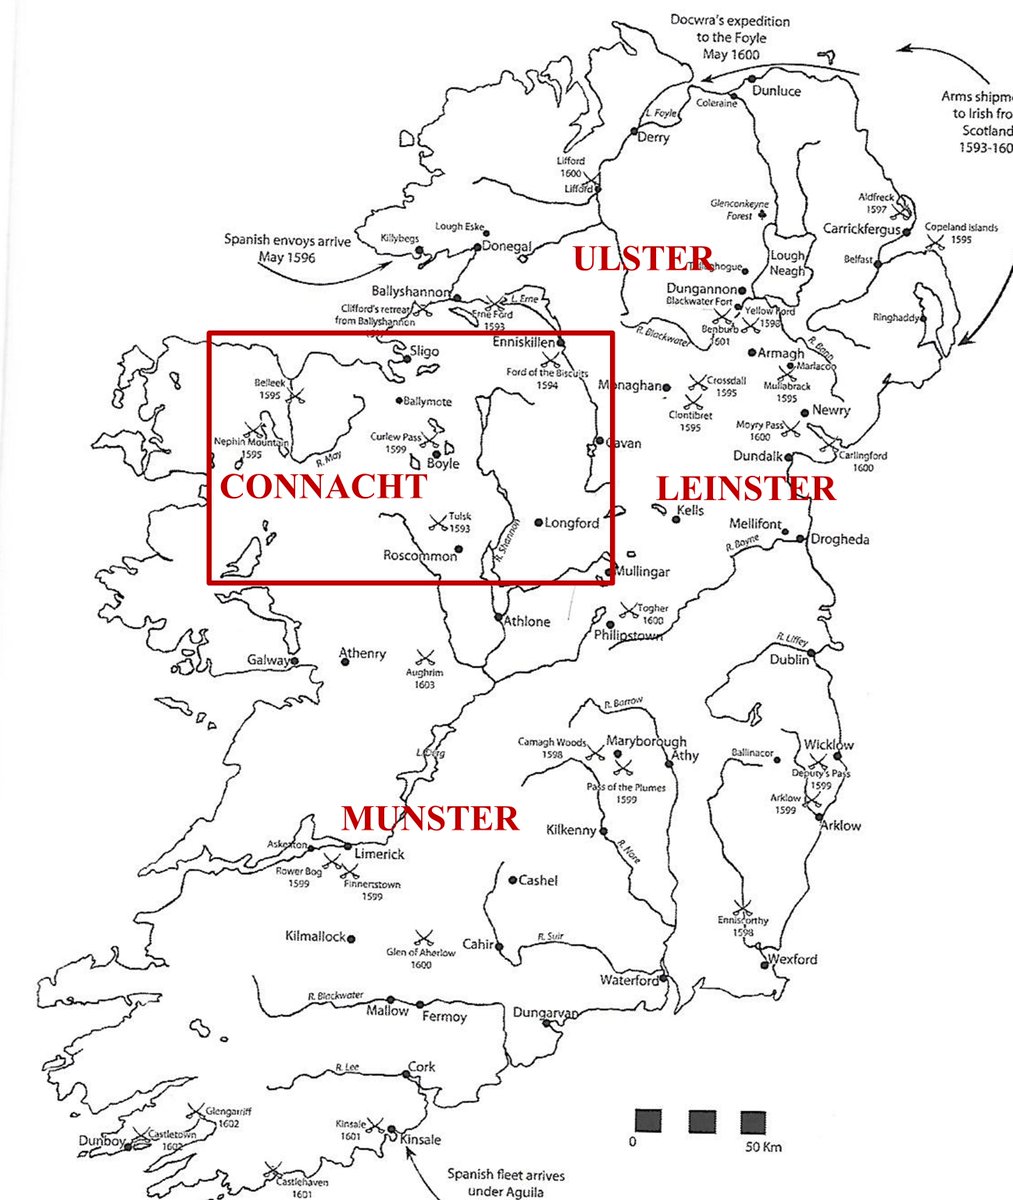 A ese factor, hay que añadirle que el día 15 de agosto el ejército del representante de la Corona en Connacht, Sir Conyers Clifford, había sido aniquilado en una emboscada del ejército de Hugh O’Donnell en Curlew Pass, cerca de Boyle, perdiendo la mayor parte de su ejército.